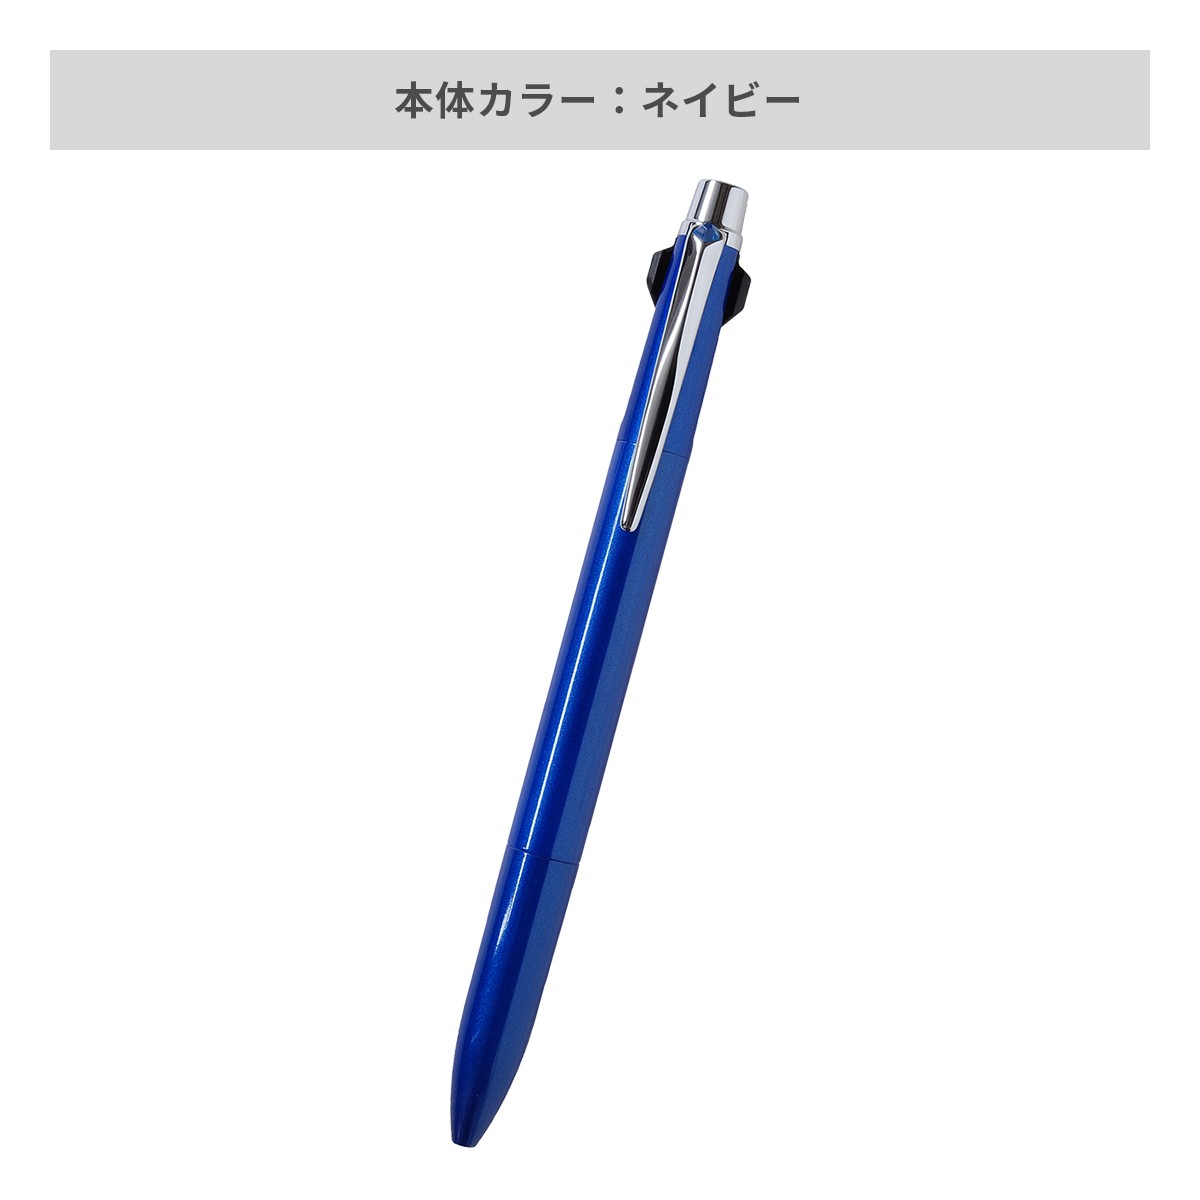 【短納期】三菱鉛筆 ジェットストリーム プライム 多機能ペン 2&1 0.7mm【多機能ペン / レーザー彫刻】 画像4